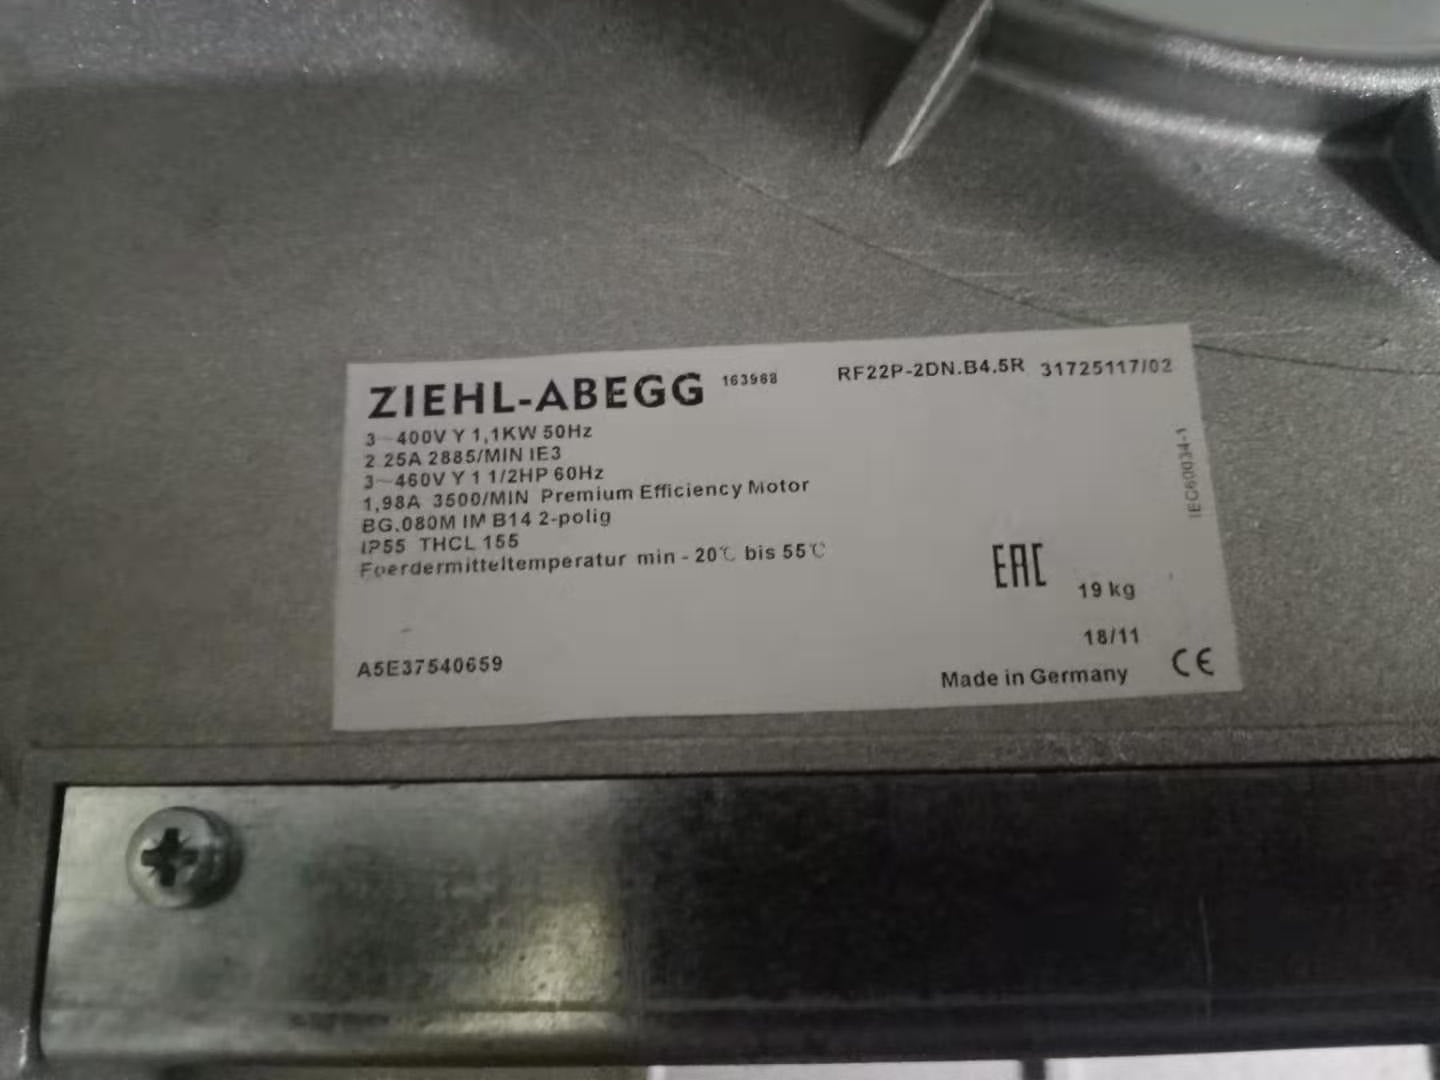 RF22P‐2DN.B4.5R ZIEHL-ABEGG centrifugal fan 400V AC 2.25A Siemens  1PH718/1PH7224/1PH7228 Series Spindle Servo Motor